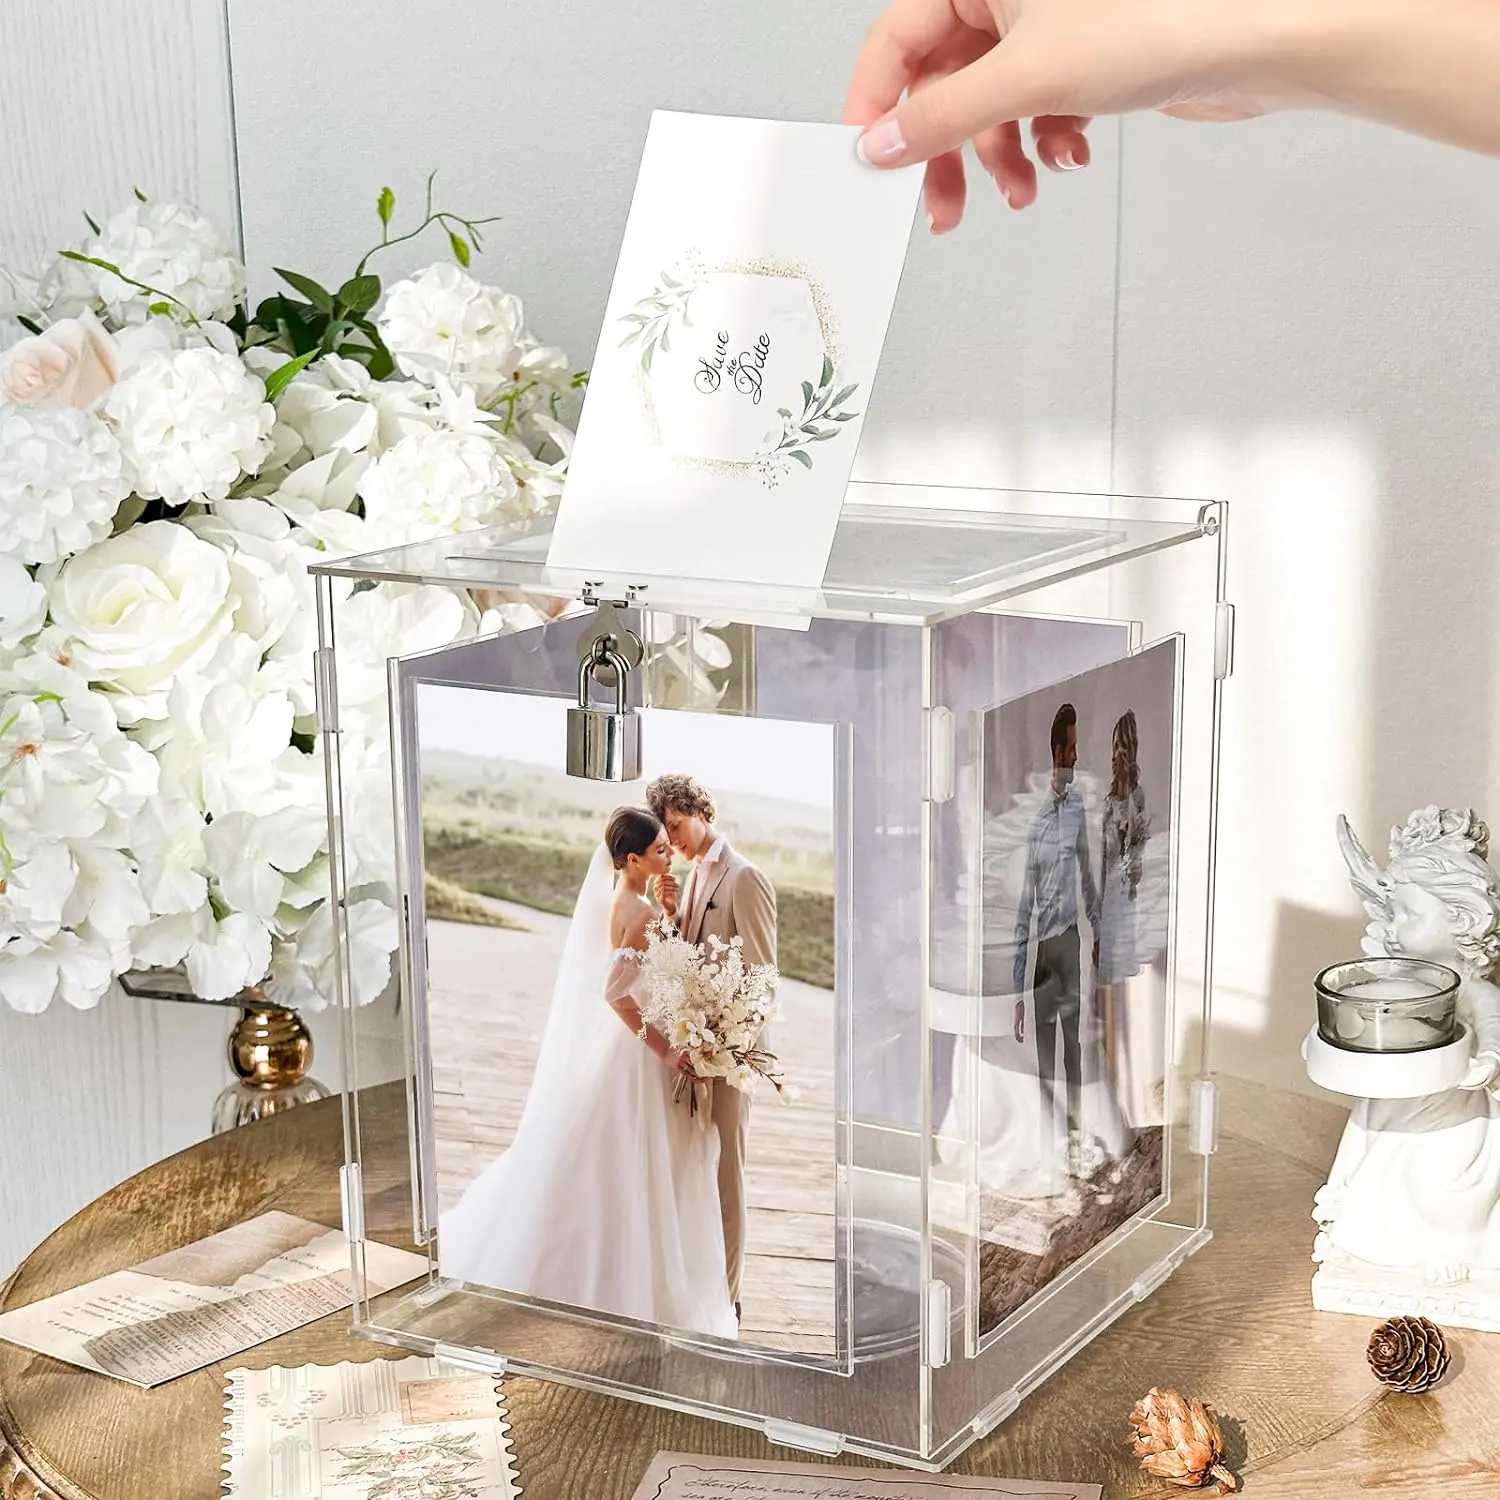 Gaojian mới rõ ràng Acrylic thẻ hình ảnh đứng với khóa khe cắm phong bì đám cưới hộp có nhu cầu cũng hộp cho món quà cưới tiếp nhận